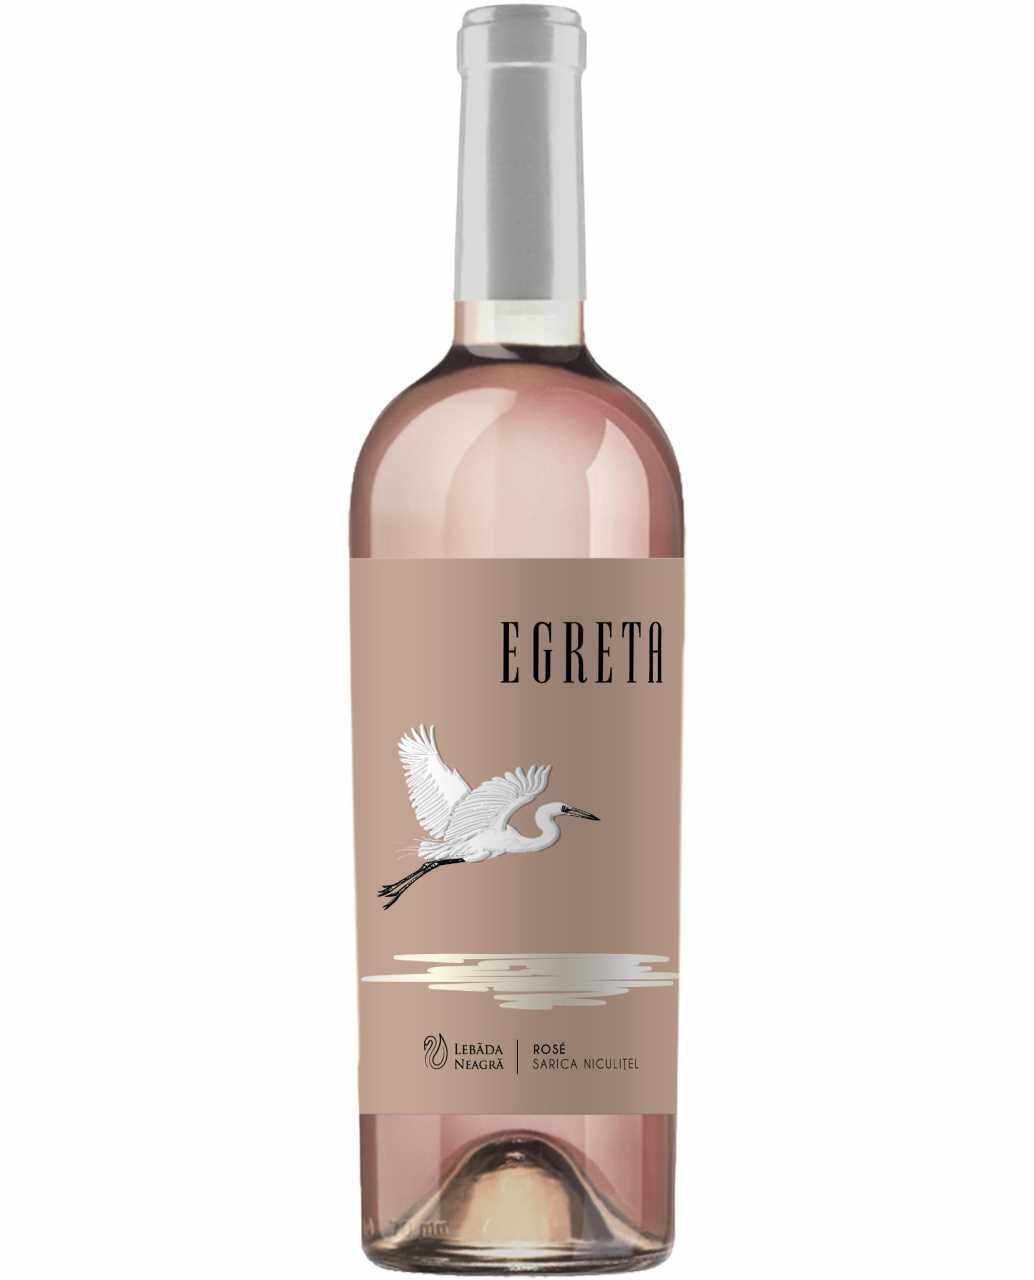 Vin rose - Lebada Neagra, Egreta, Merlot, Demidulce, 2019 | Lebada neagra